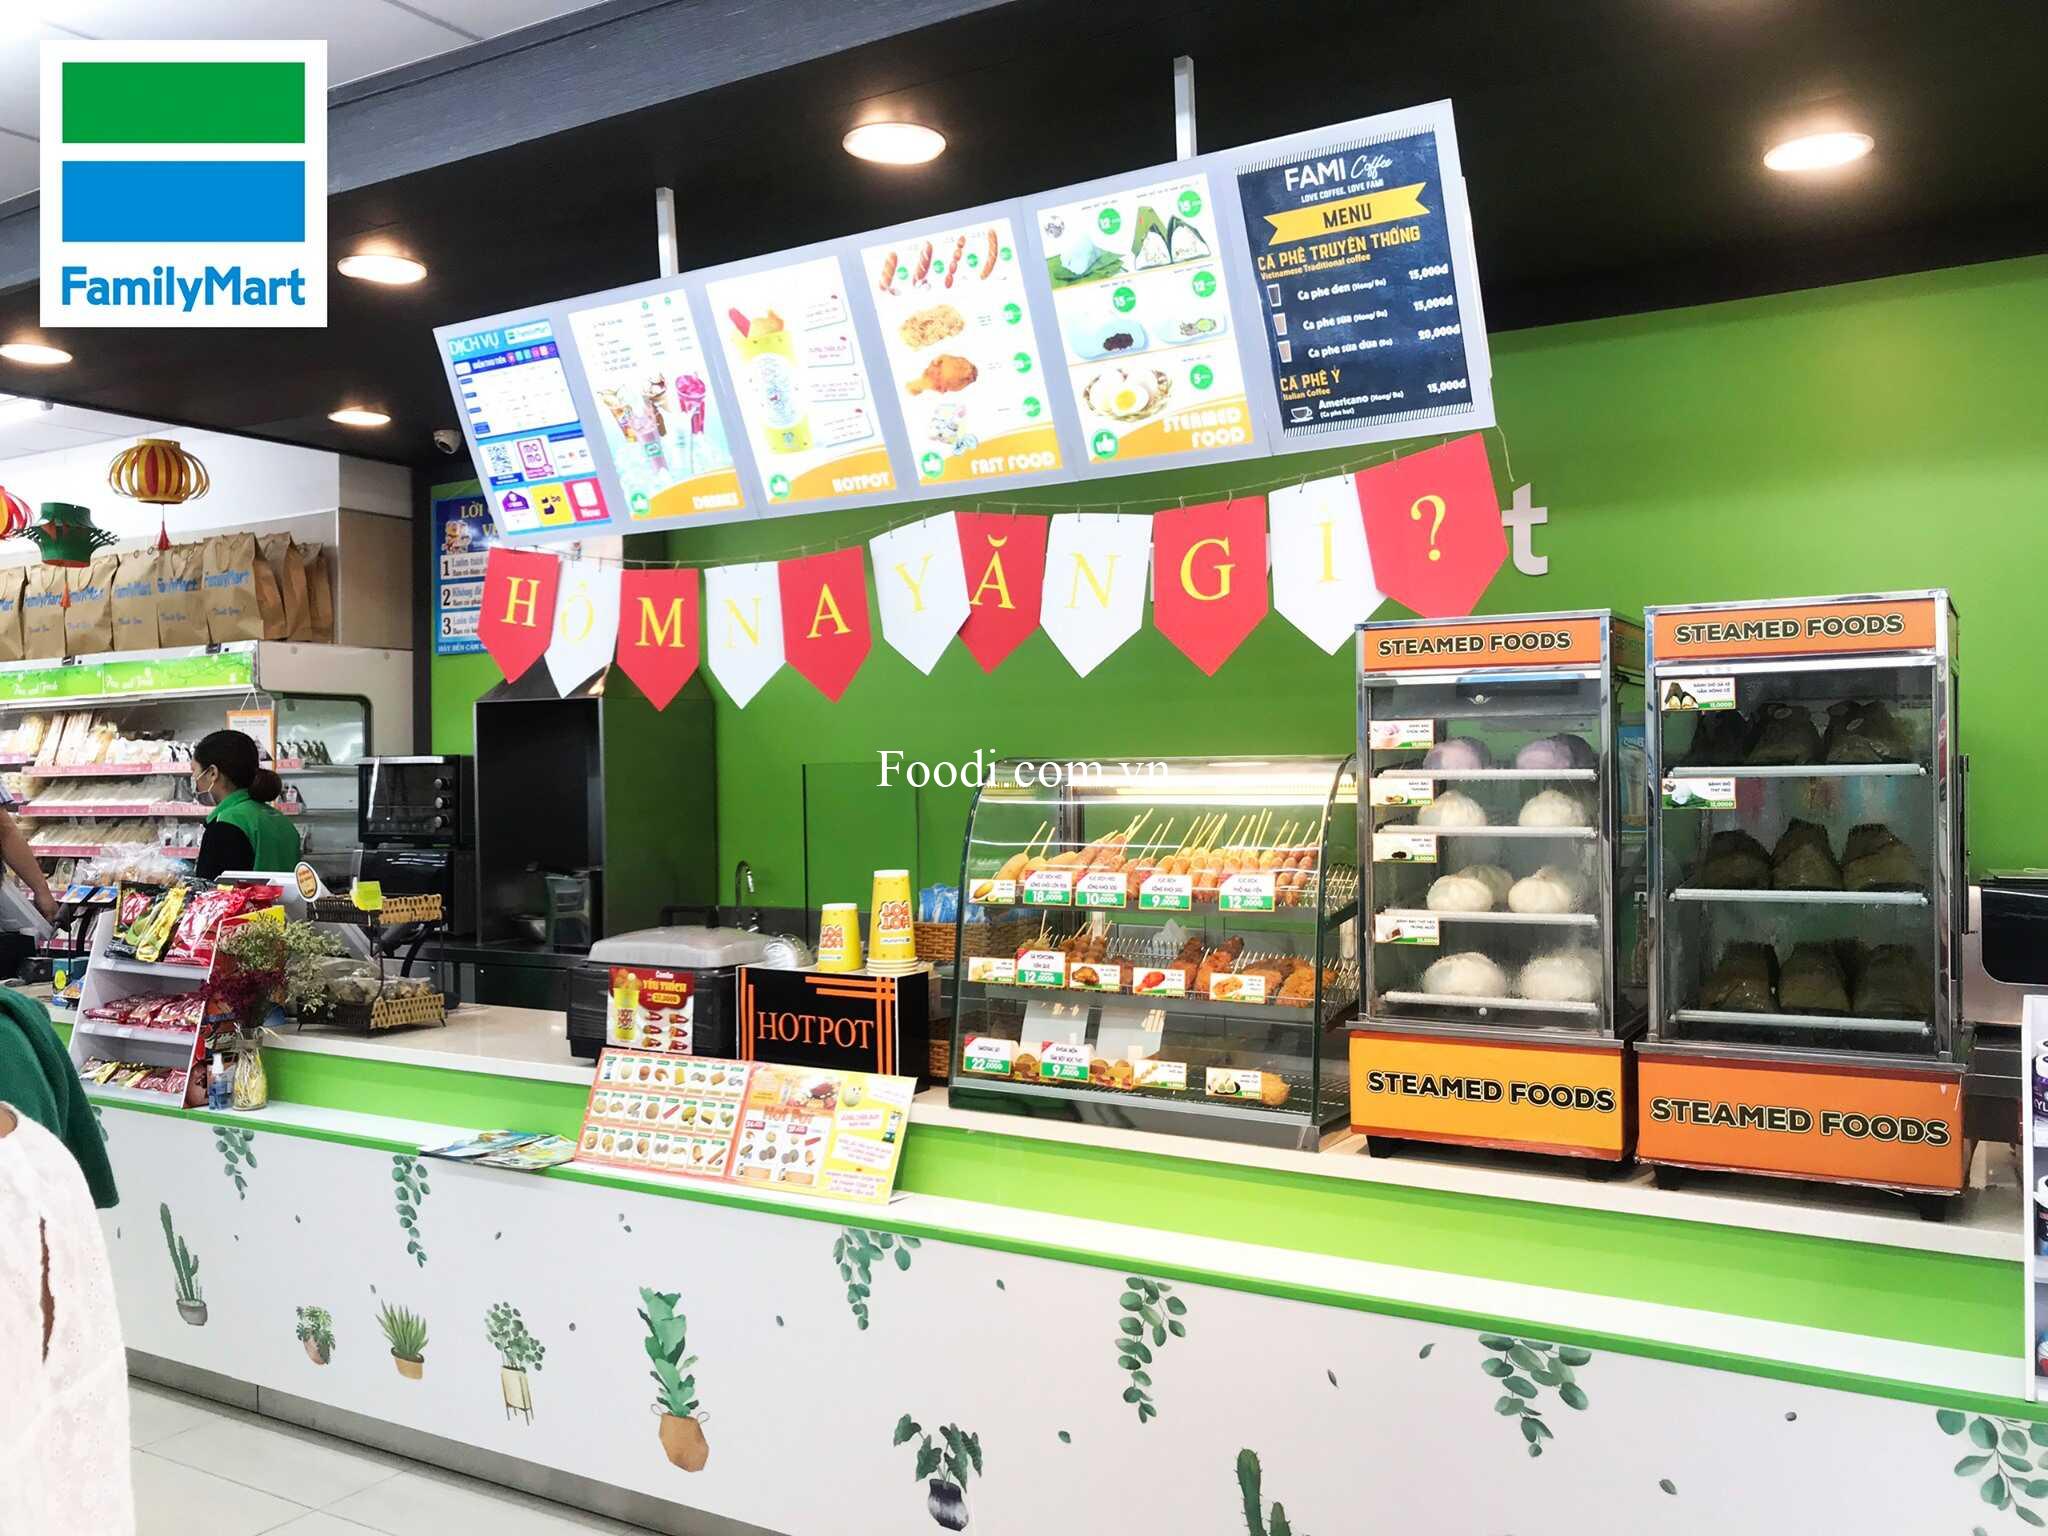 Sài Gòn - 20 cửa hàng tốt nhất cuối cùng ở Thành phố Hồ Chí Minh nổi tiếng về chất lượng